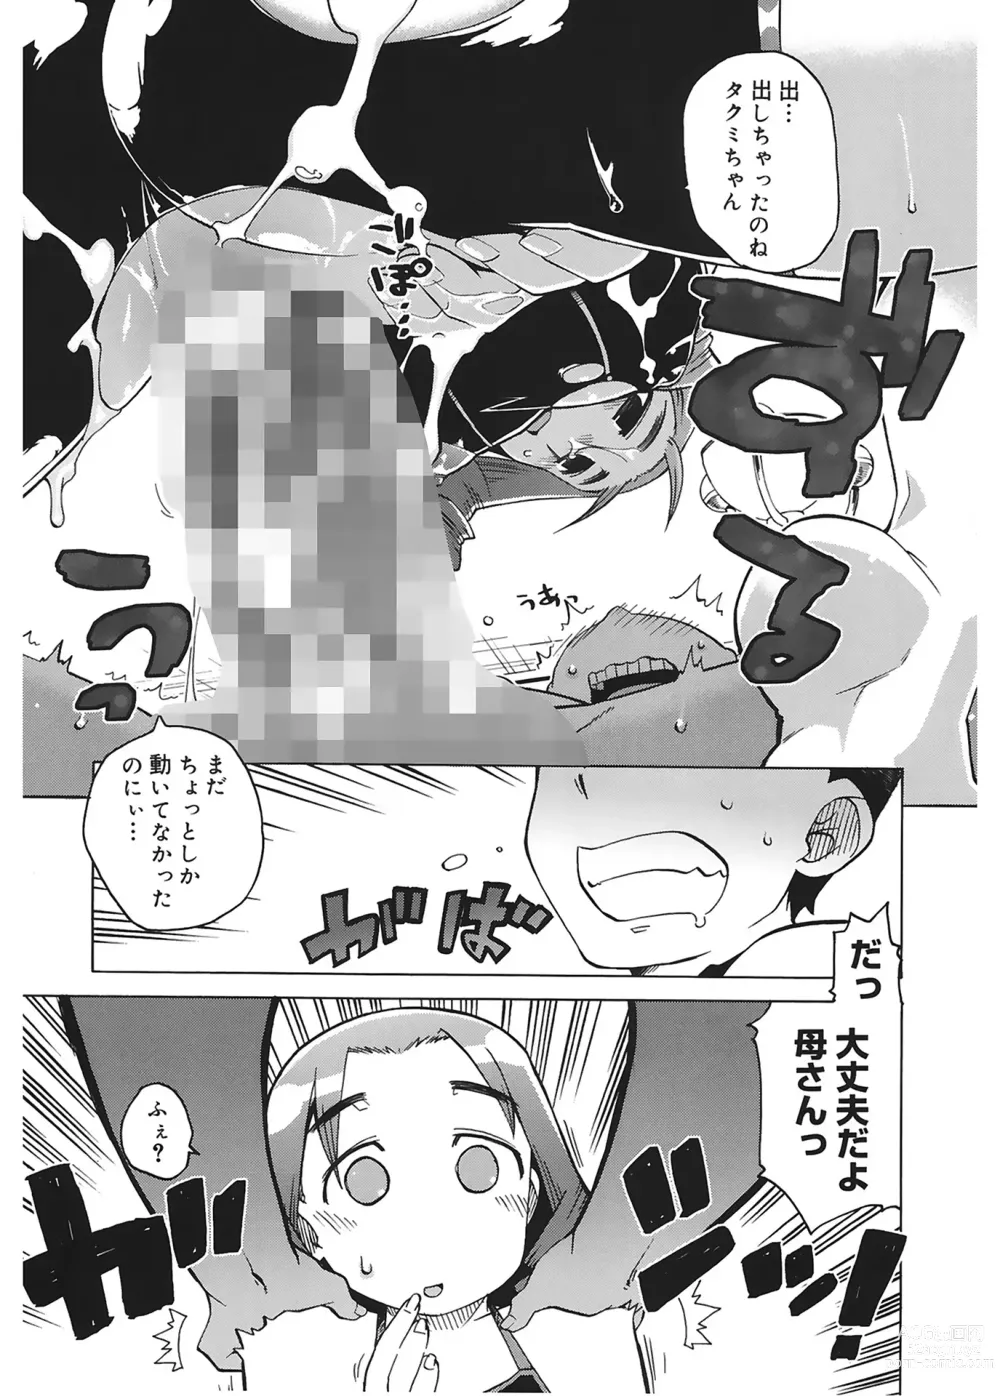 Page 17 of manga Mamma Mia!